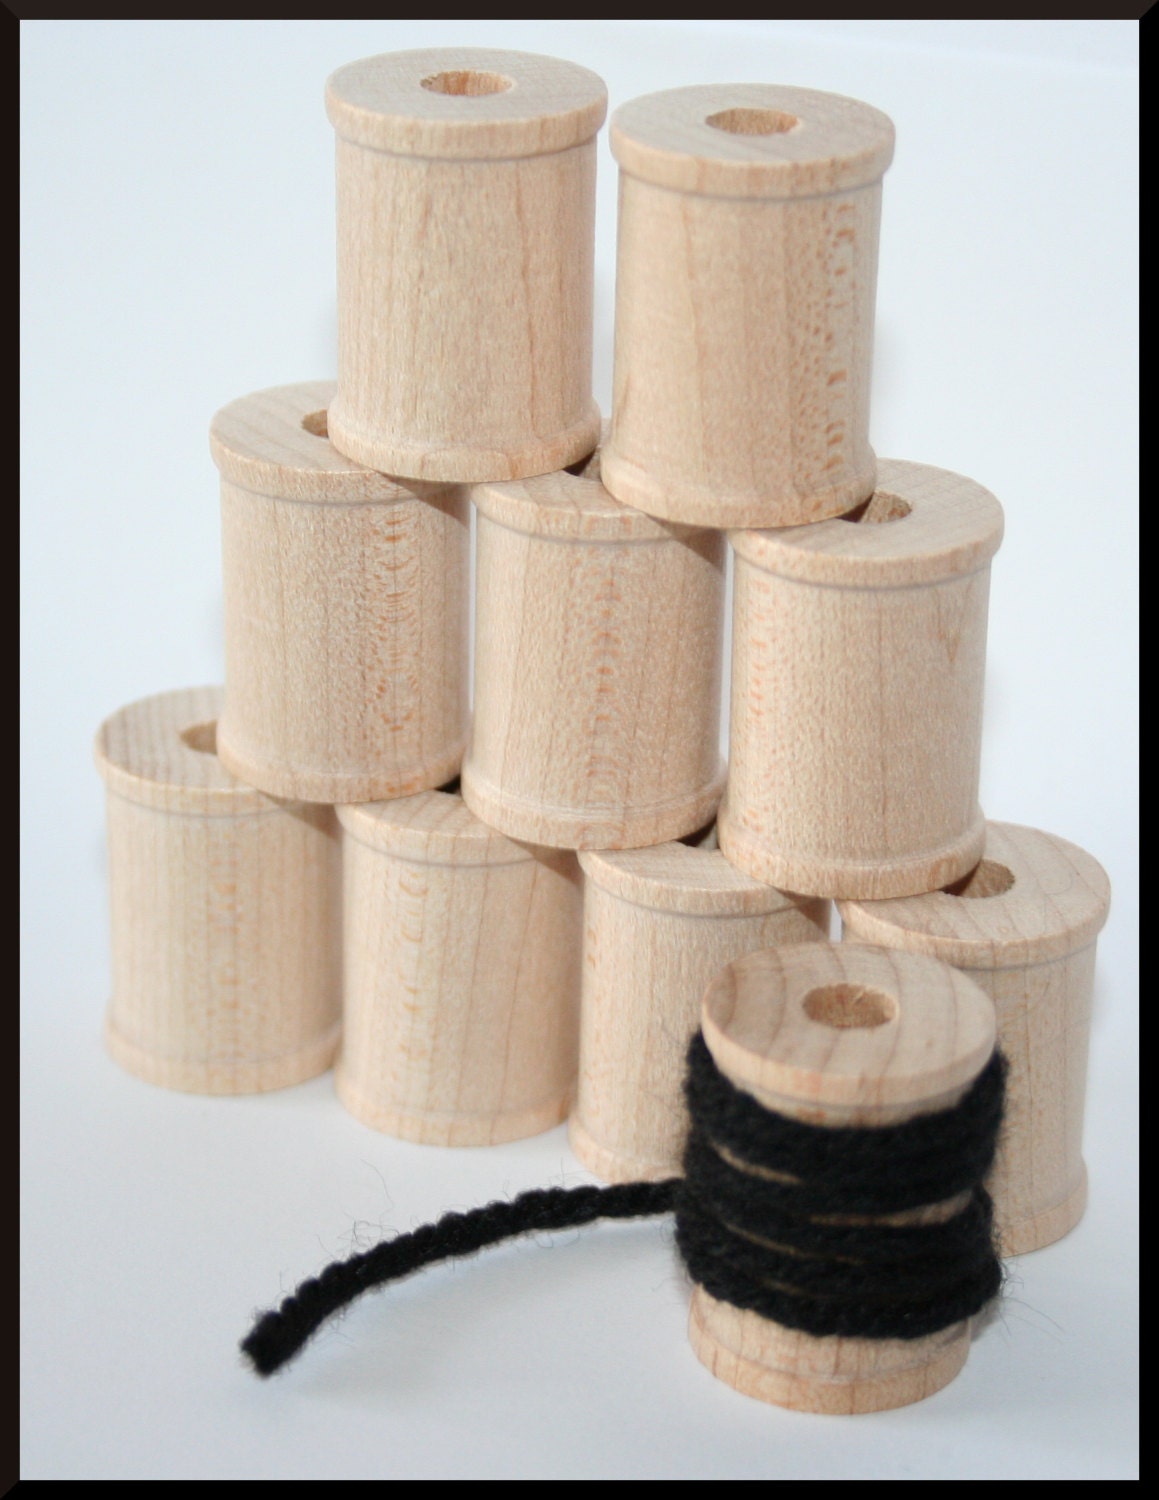 Wholesale OLYCRAFT 20PCS Wooden Empty Spool Empty Thread Spools 1.2” x 2” 